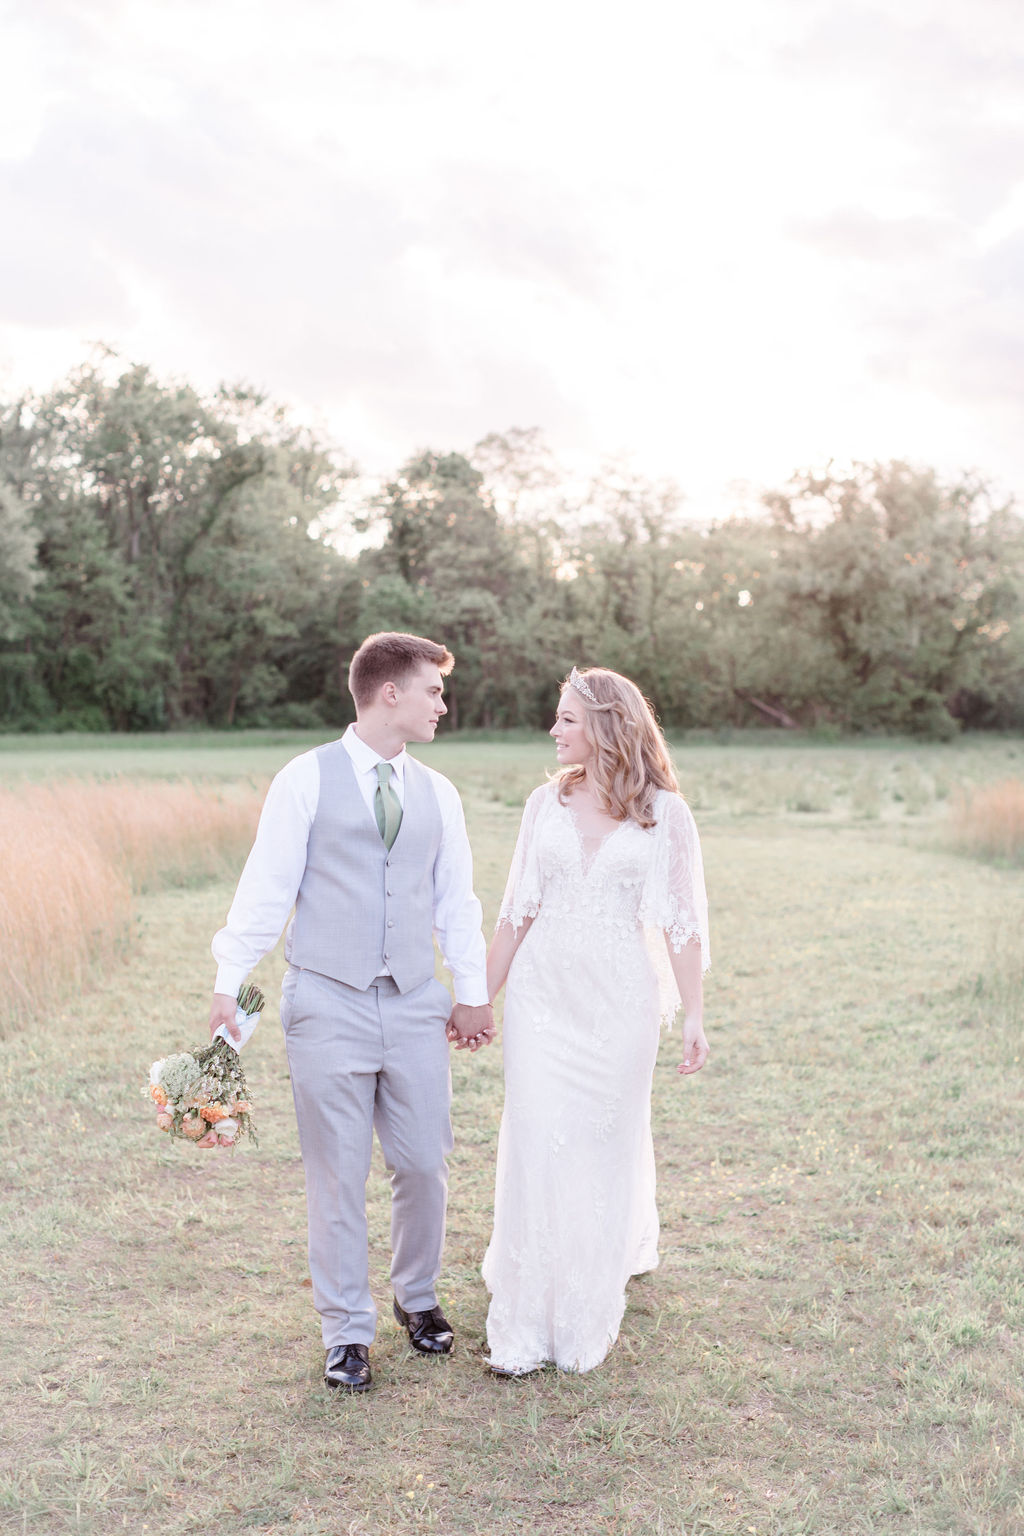 cô dâu và chú rể nắm tay nhau đi dạo trên cánh đồng trong đám cưới mùa xuân thơ mộng